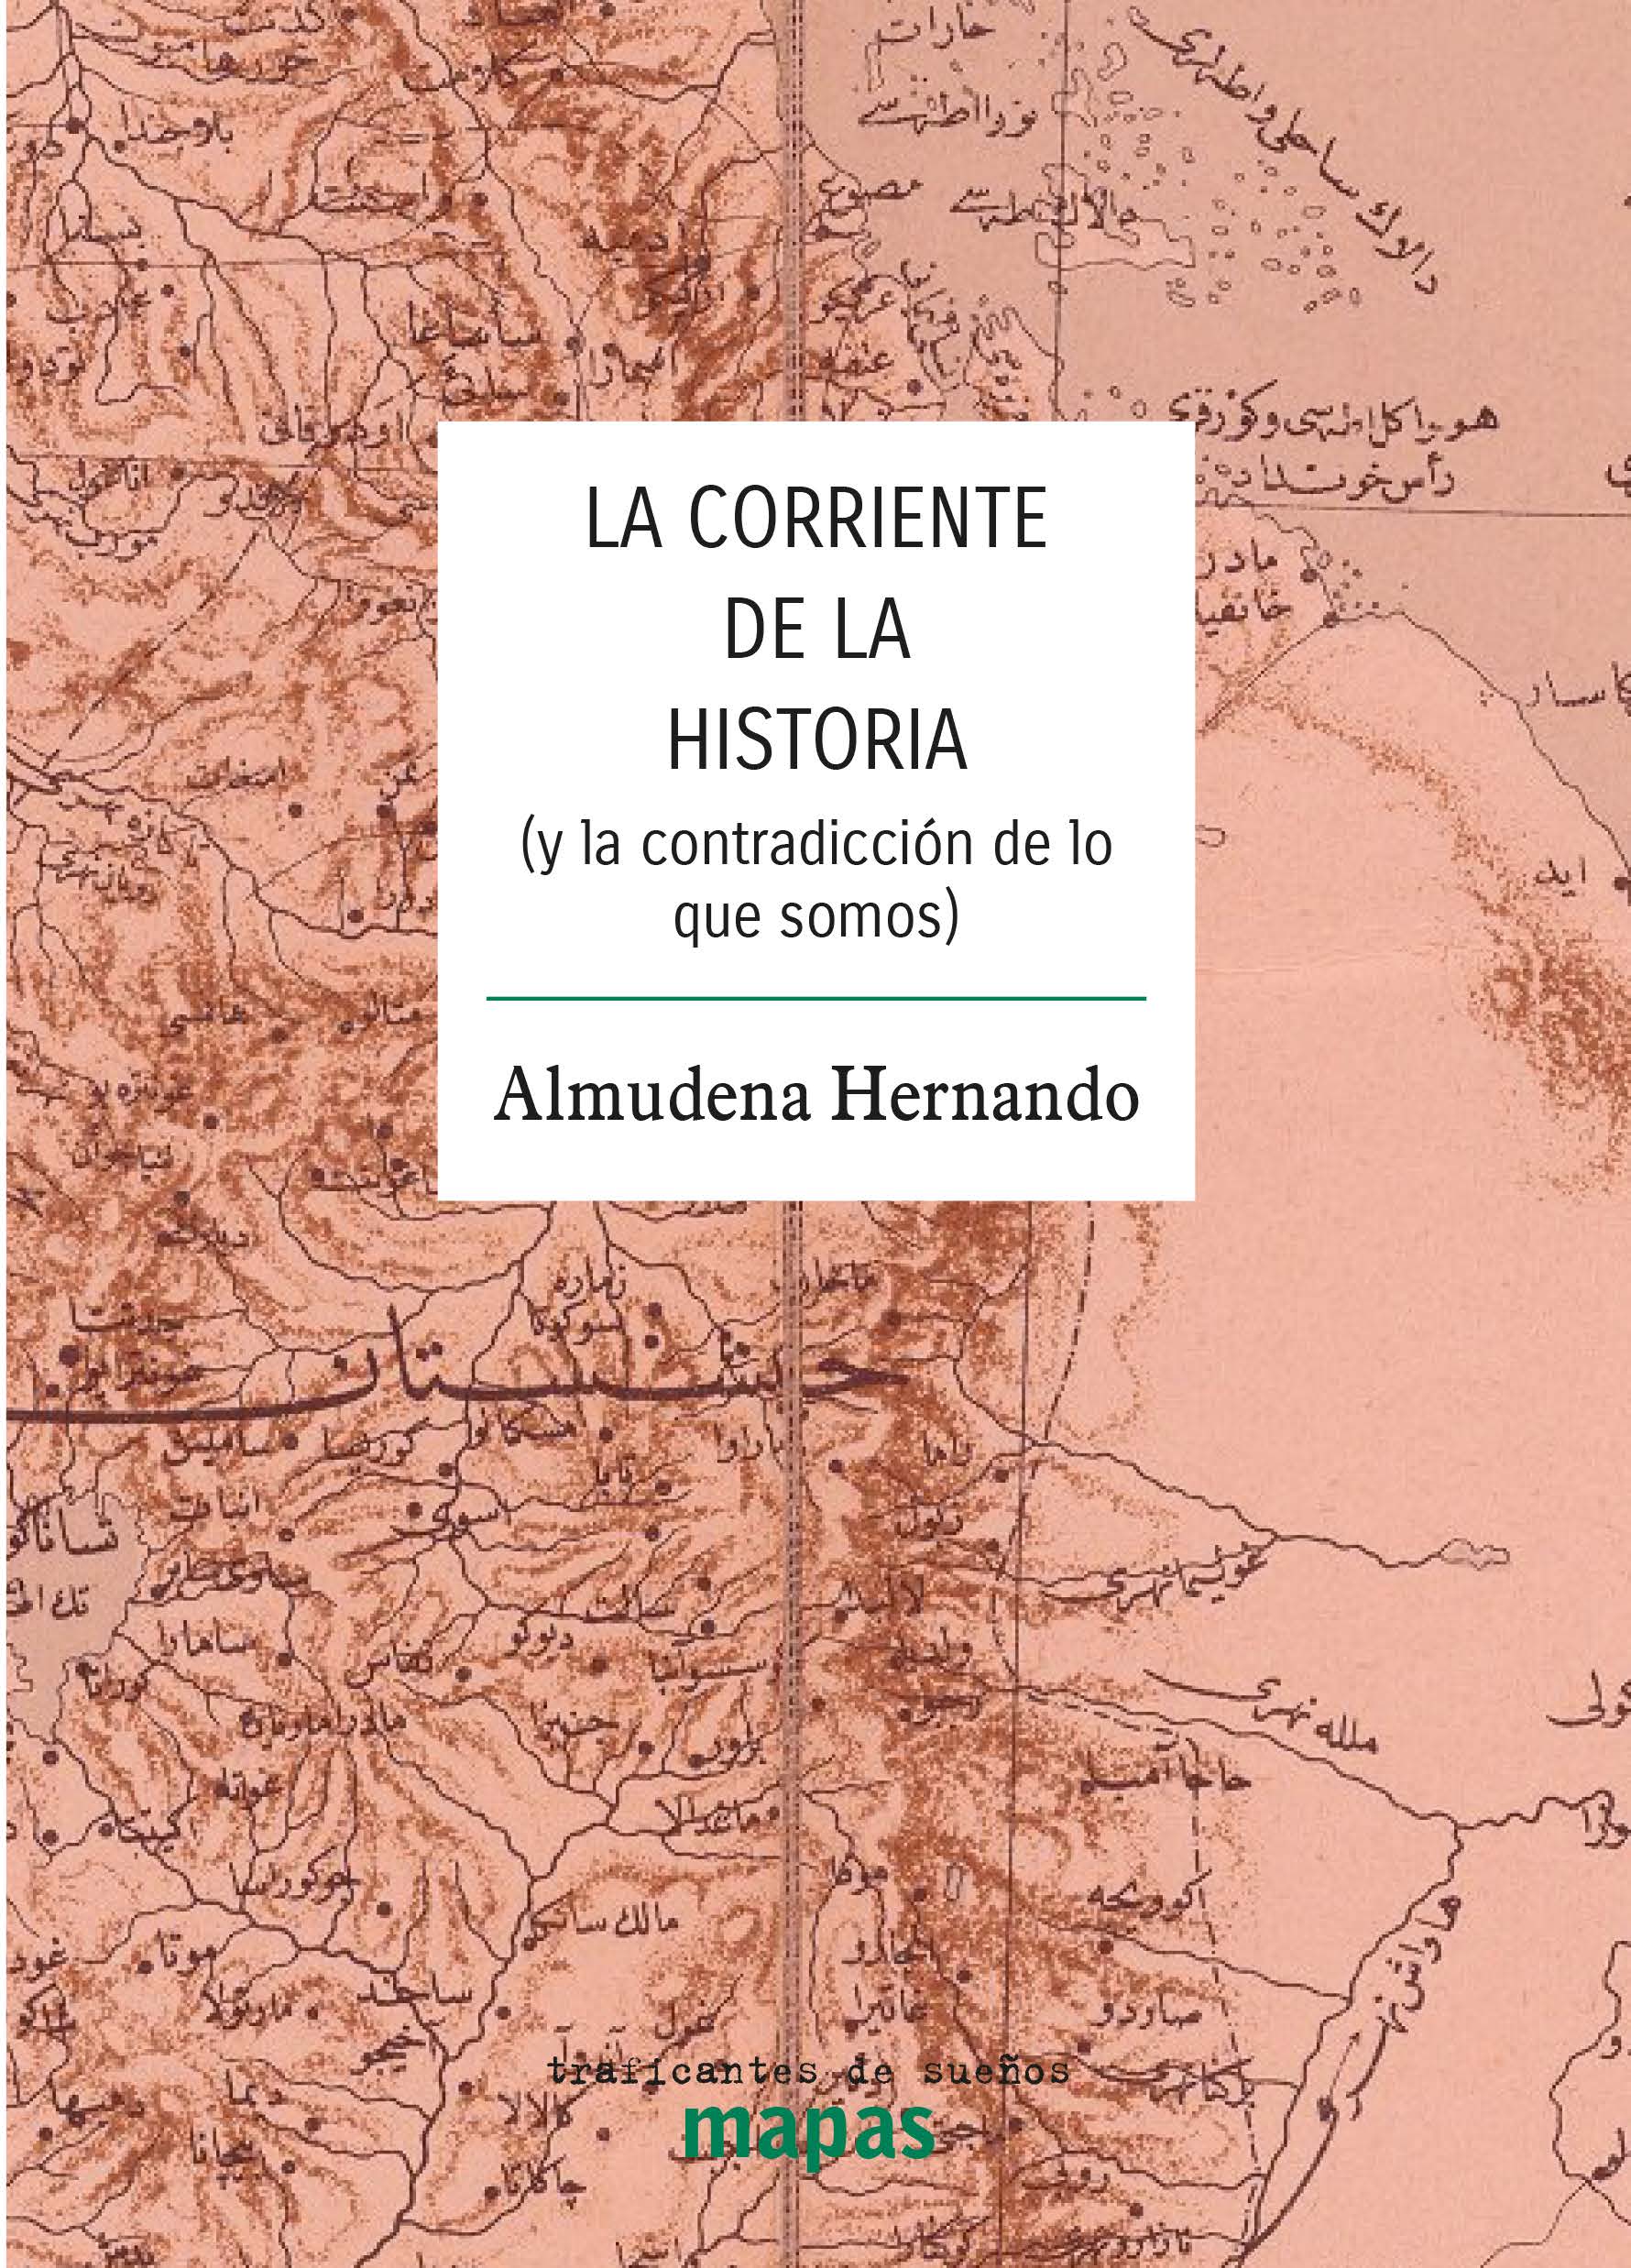 LA CORRIENTE DE LA HISTORIA - Almudena Hernando